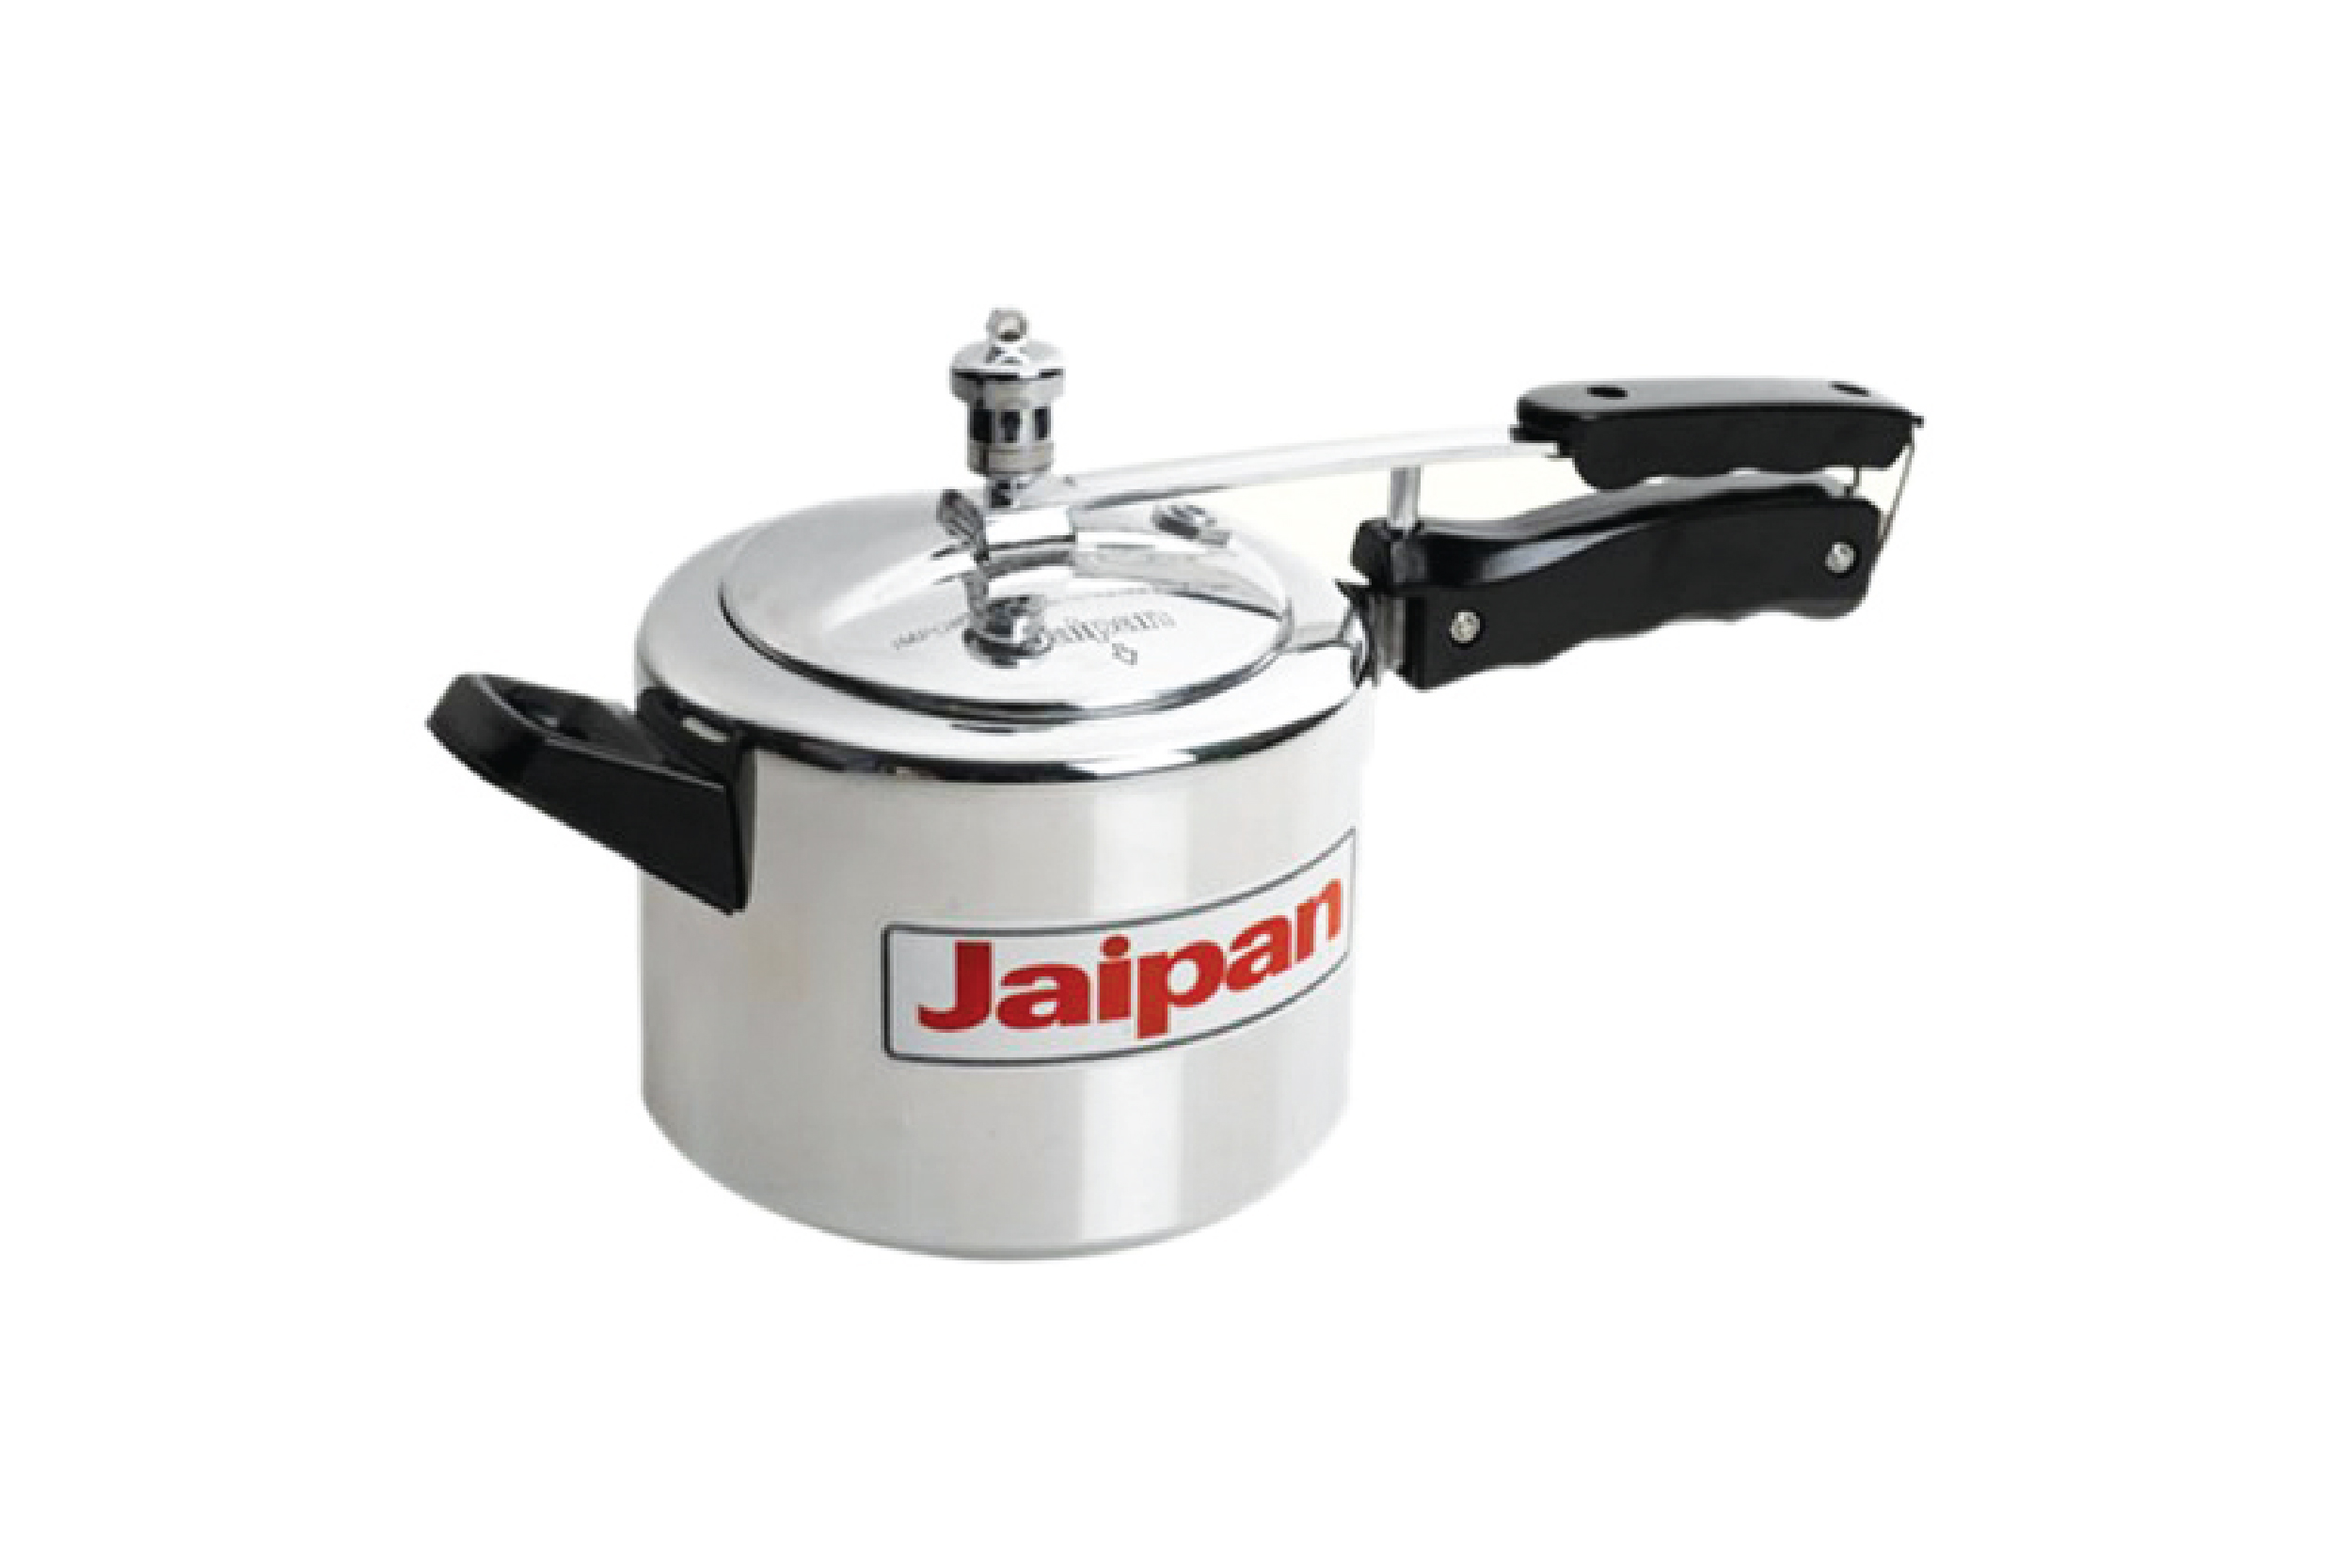 Jaipan Pressure Cooker 5.0 ltr   
